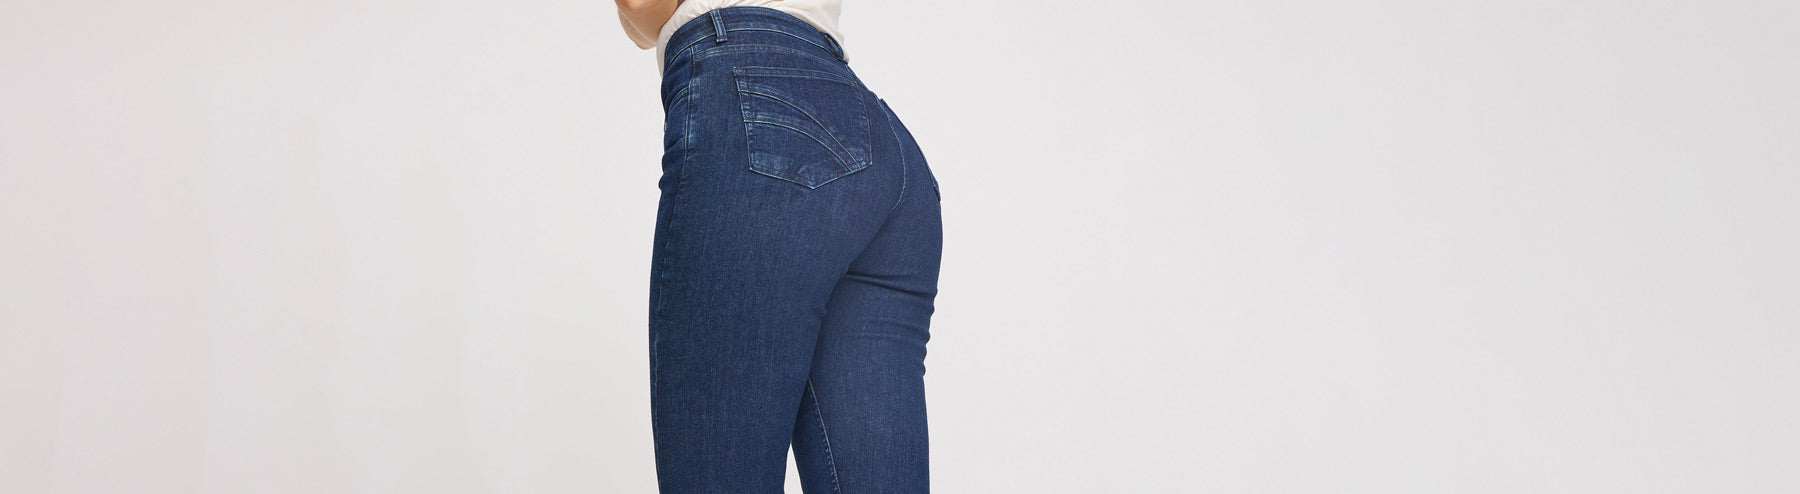 Svanemærkede jeans